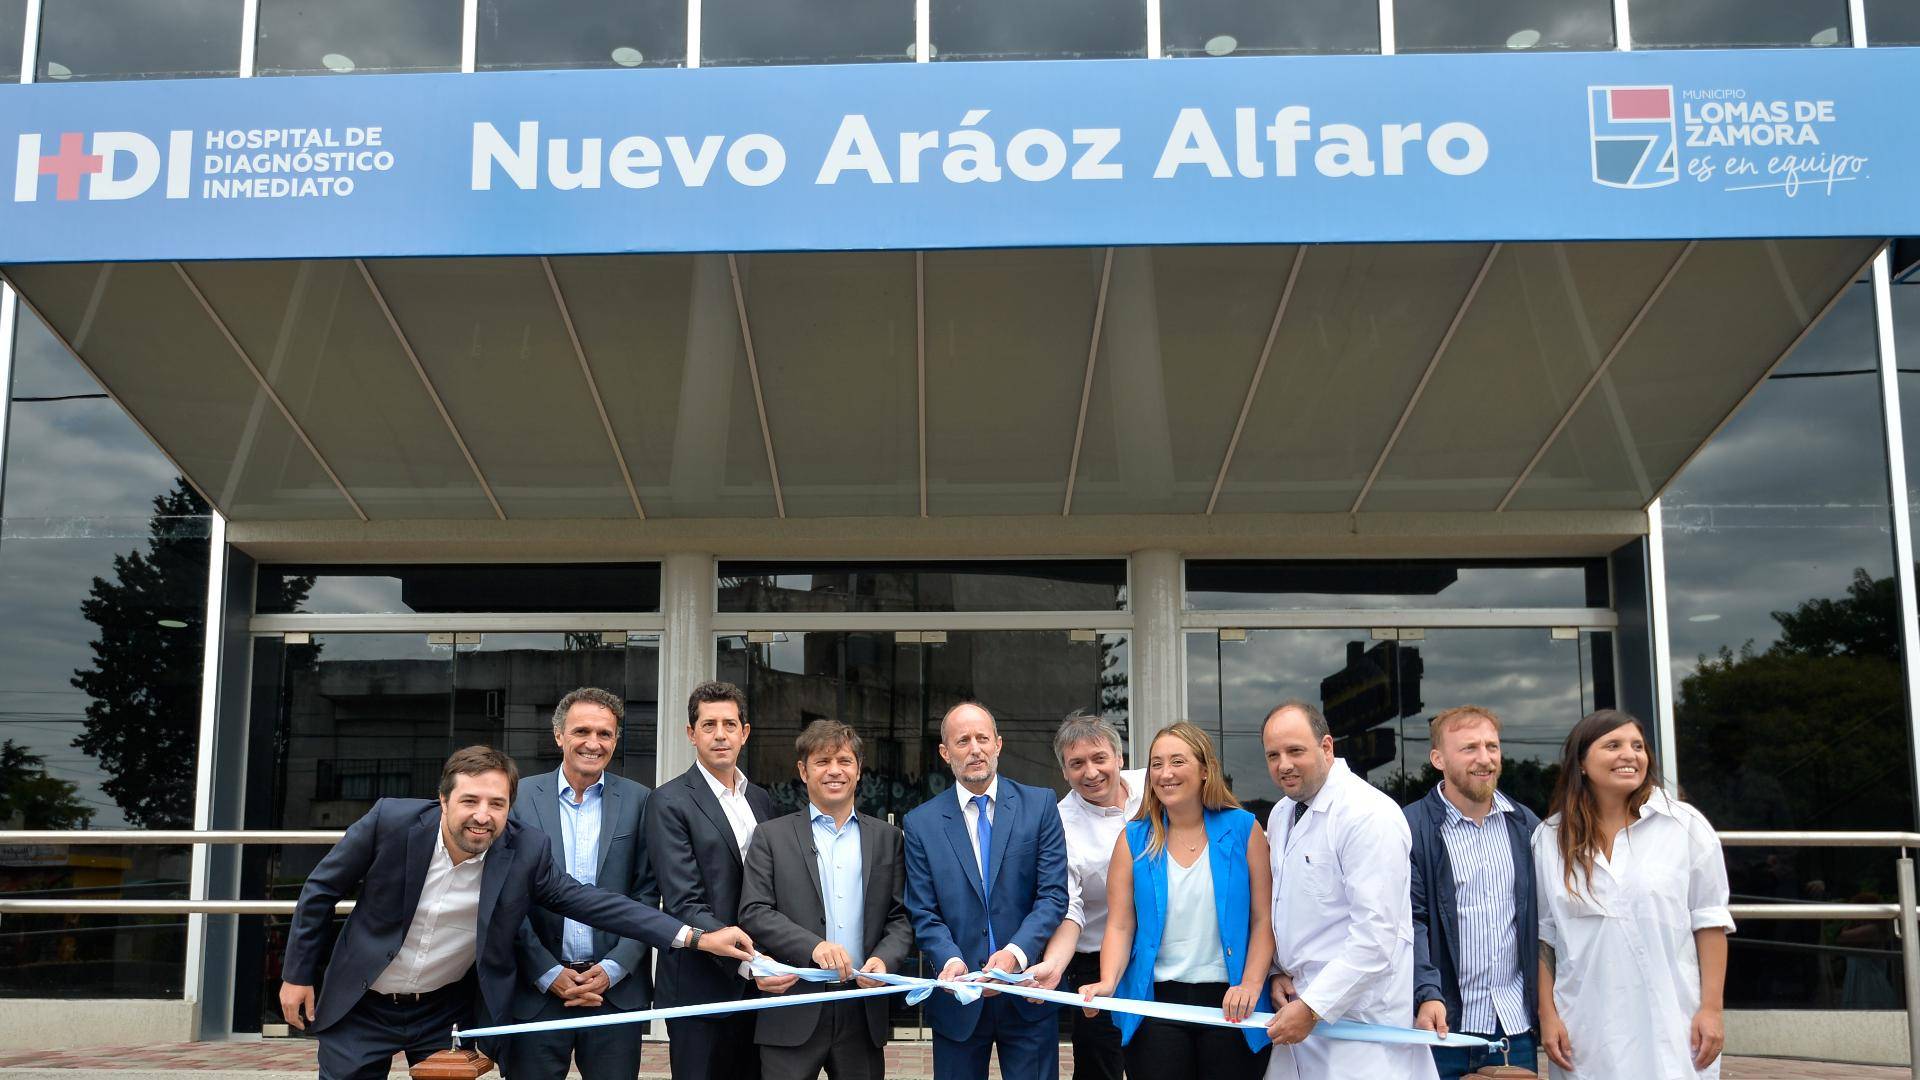 Kicillof inauguró el Hospital de Diagnóstico Inmediato de Lomas de Zamora